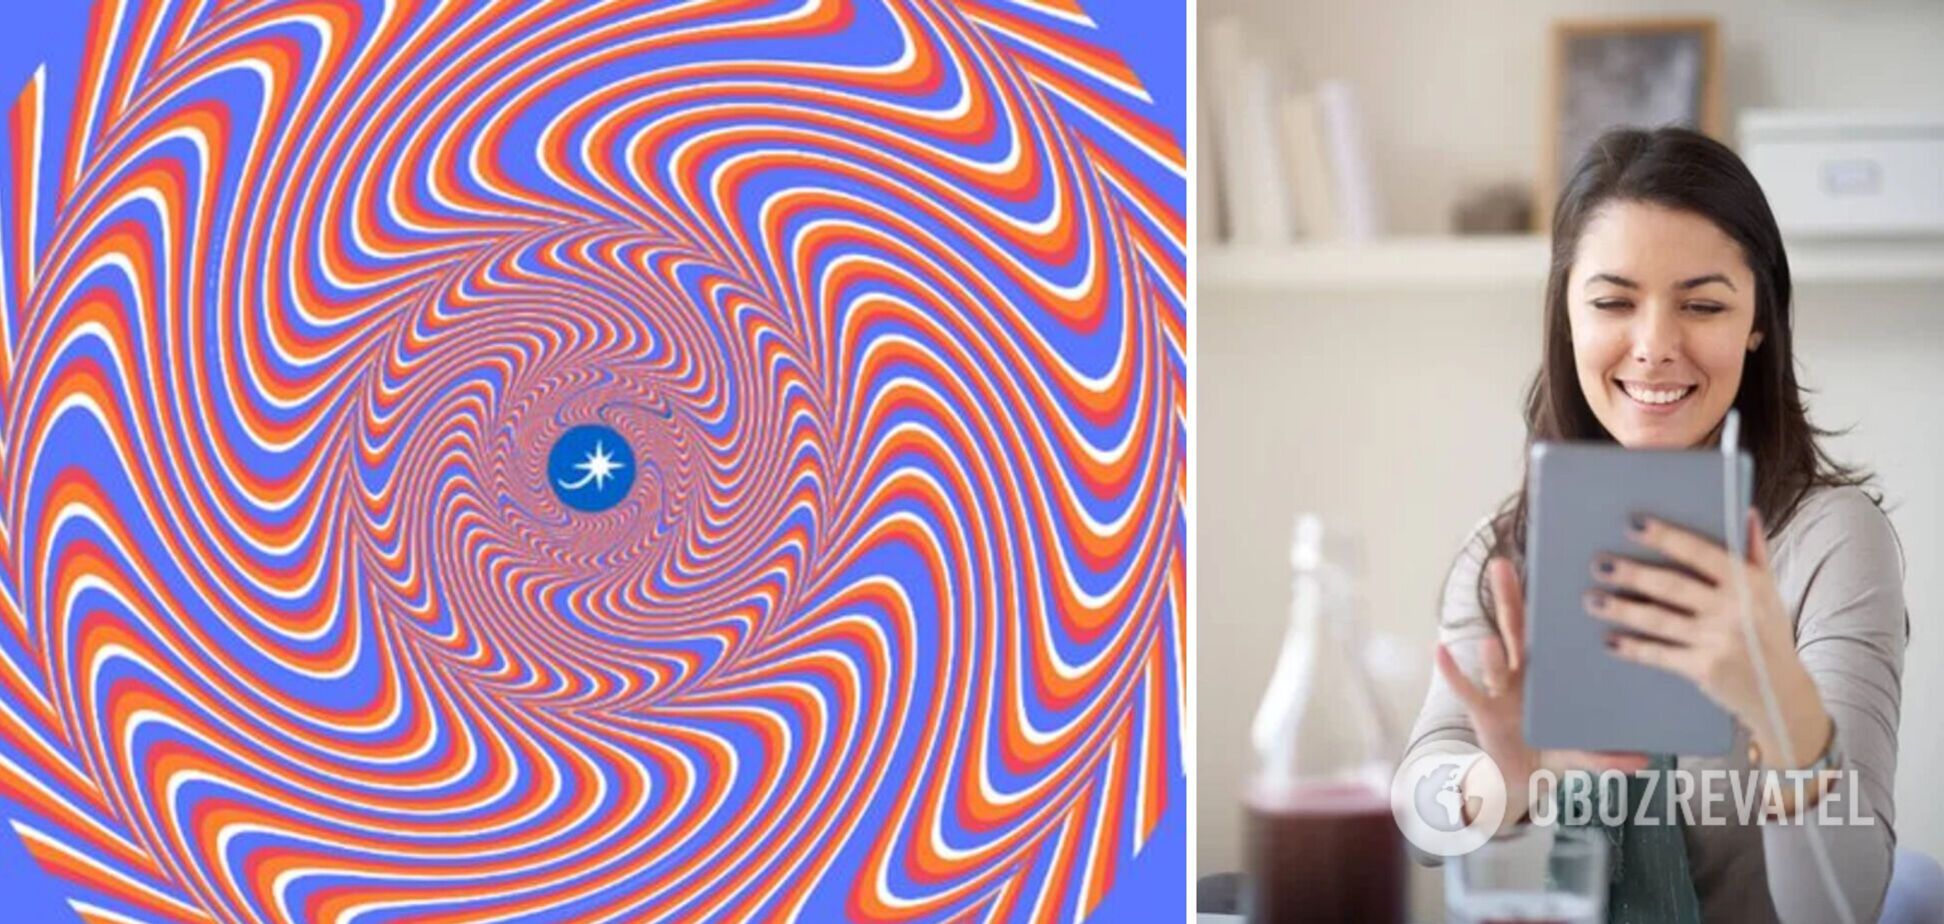 Новая гипнотическая оптическая иллюзия озадачила сеть